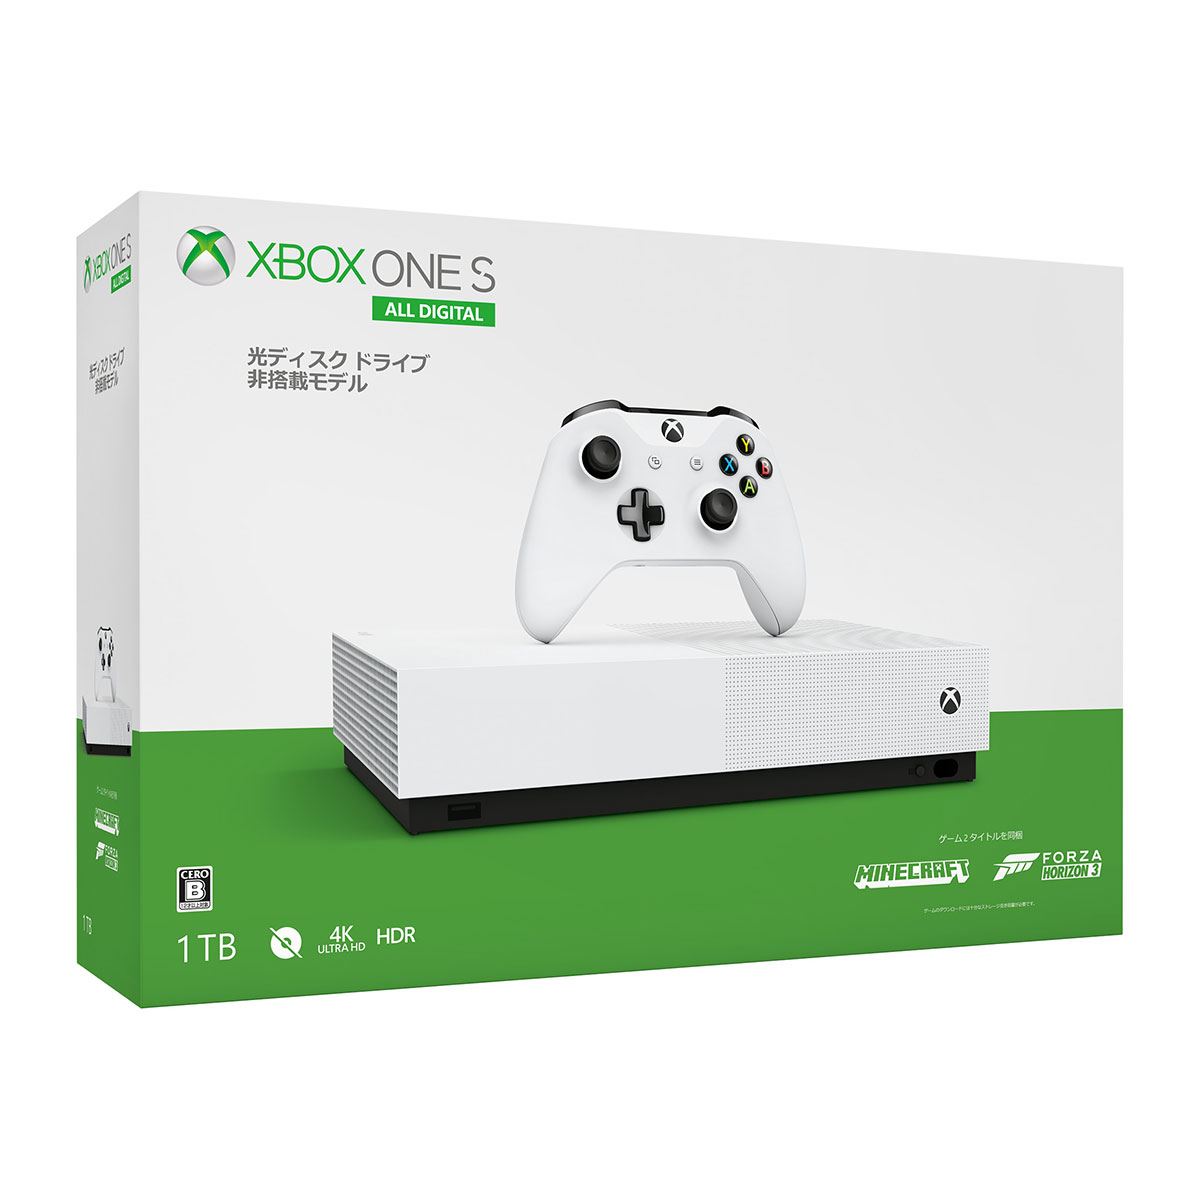 【今週発売の注目製品】24,980円の4K対応ゲーム機「Xbox One S 